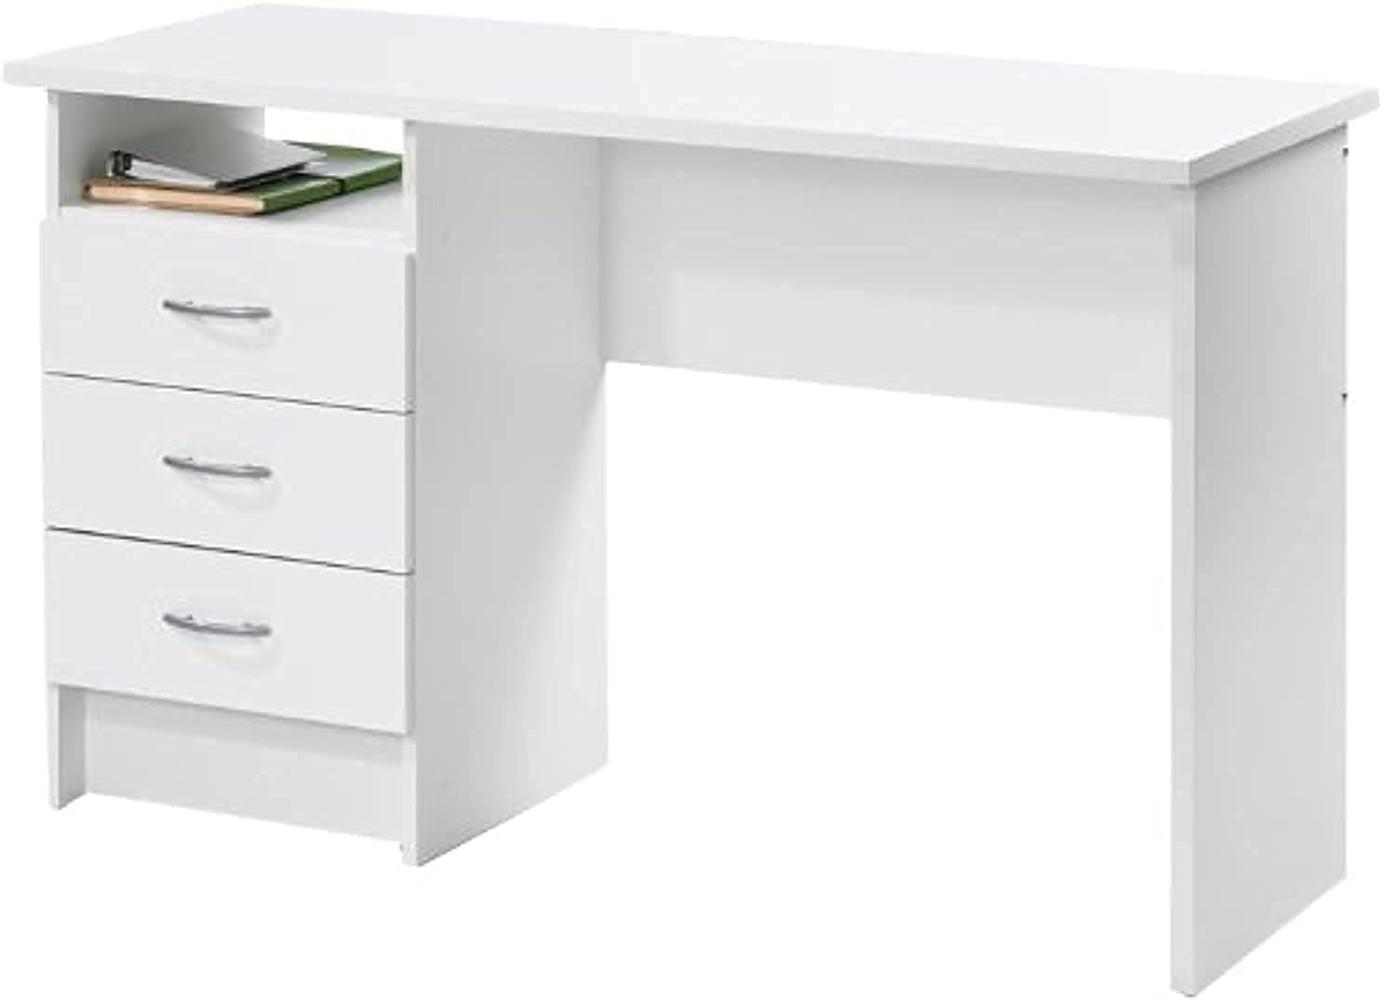 Linearer Schreibtisch mit drei Schubladen, weiße Farbe, Maße 120 x 72 x 48 cm Bild 1